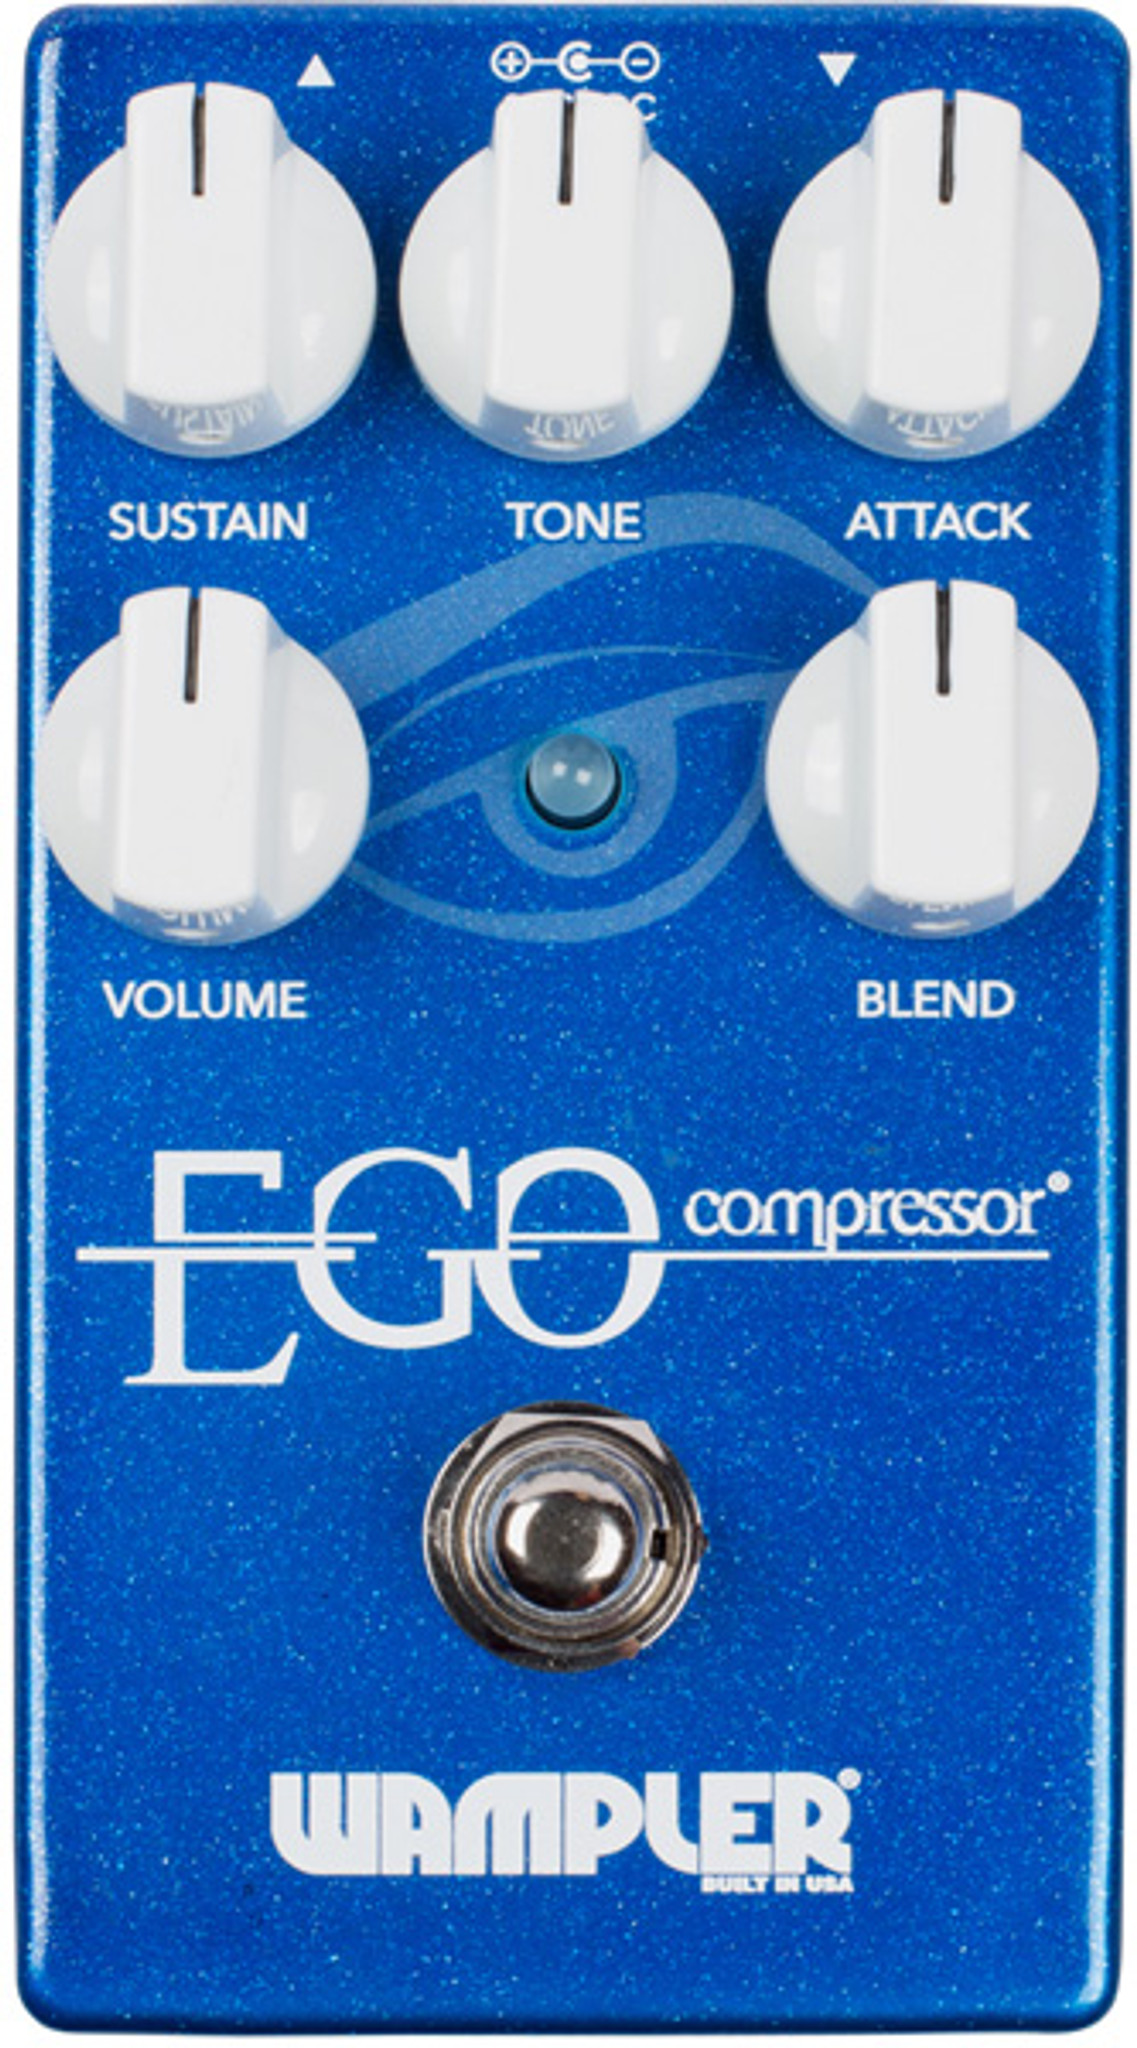 Ego Compressor